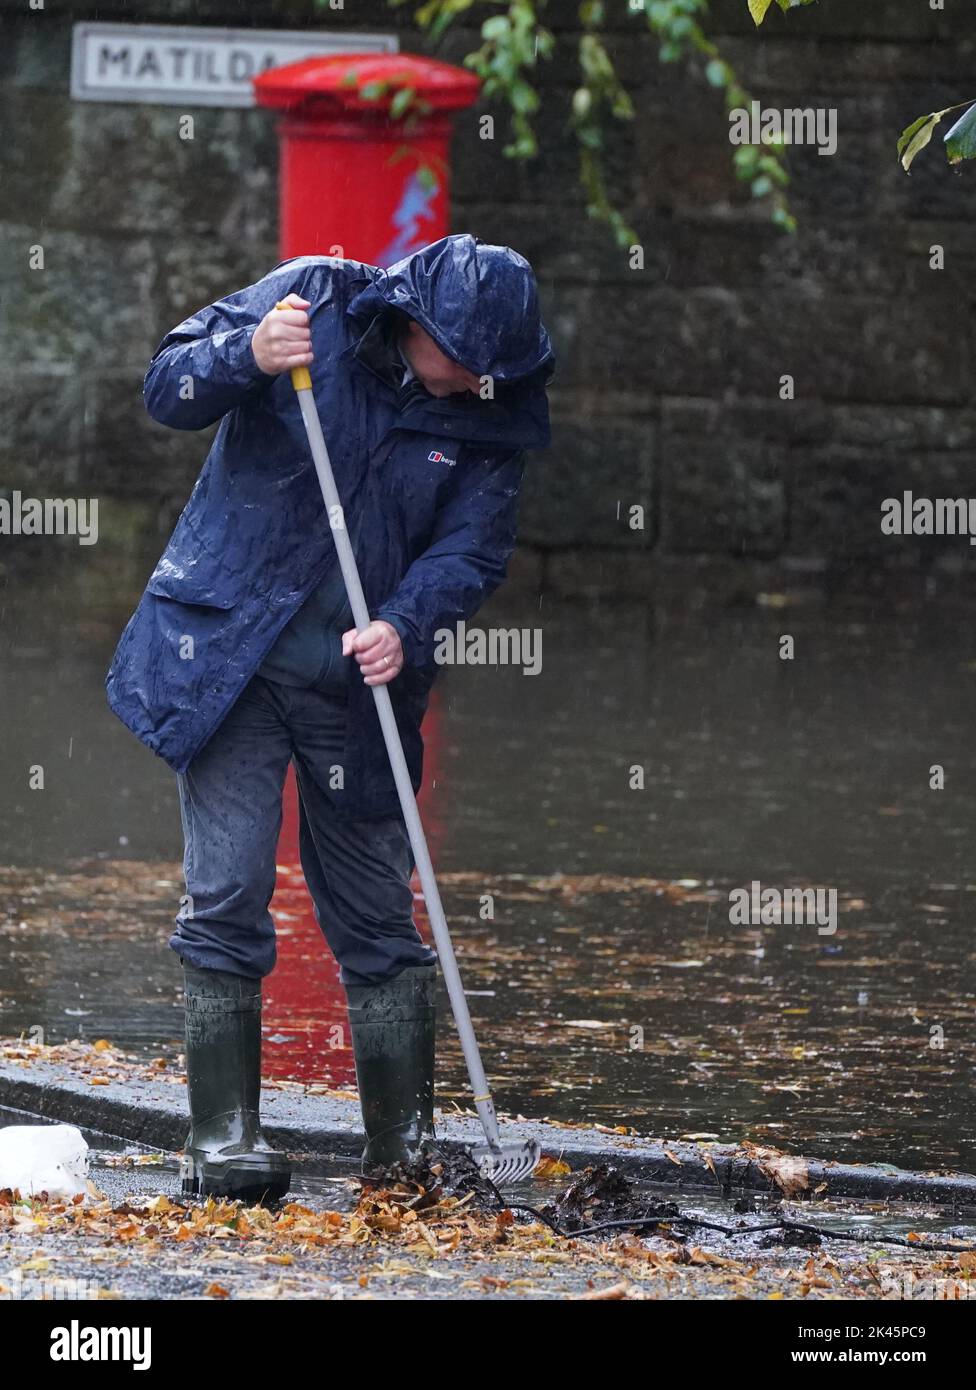 Un uomo cerca di facilitare le alluvioni eliminando i detriti autunnali dagli scarichi durante le forti precipitazioni a Glasgow. Data immagine: Venerdì 30 settembre 2022. Foto Stock